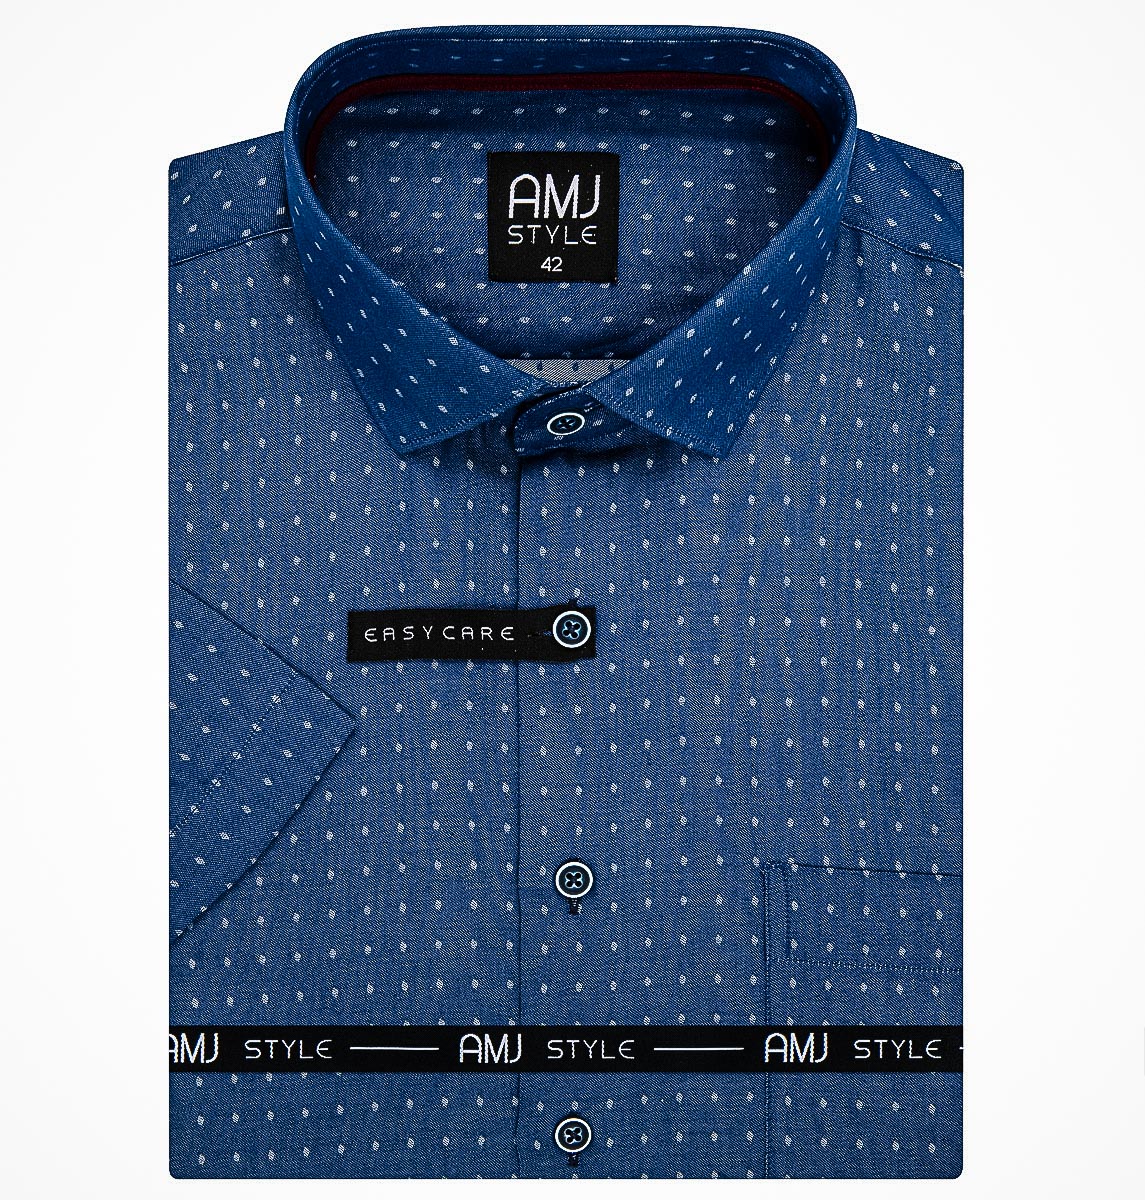 Pánská košile AMJ, modrá puntíkovaná VKR1126, krátký rukáv, (regular + slim fit)